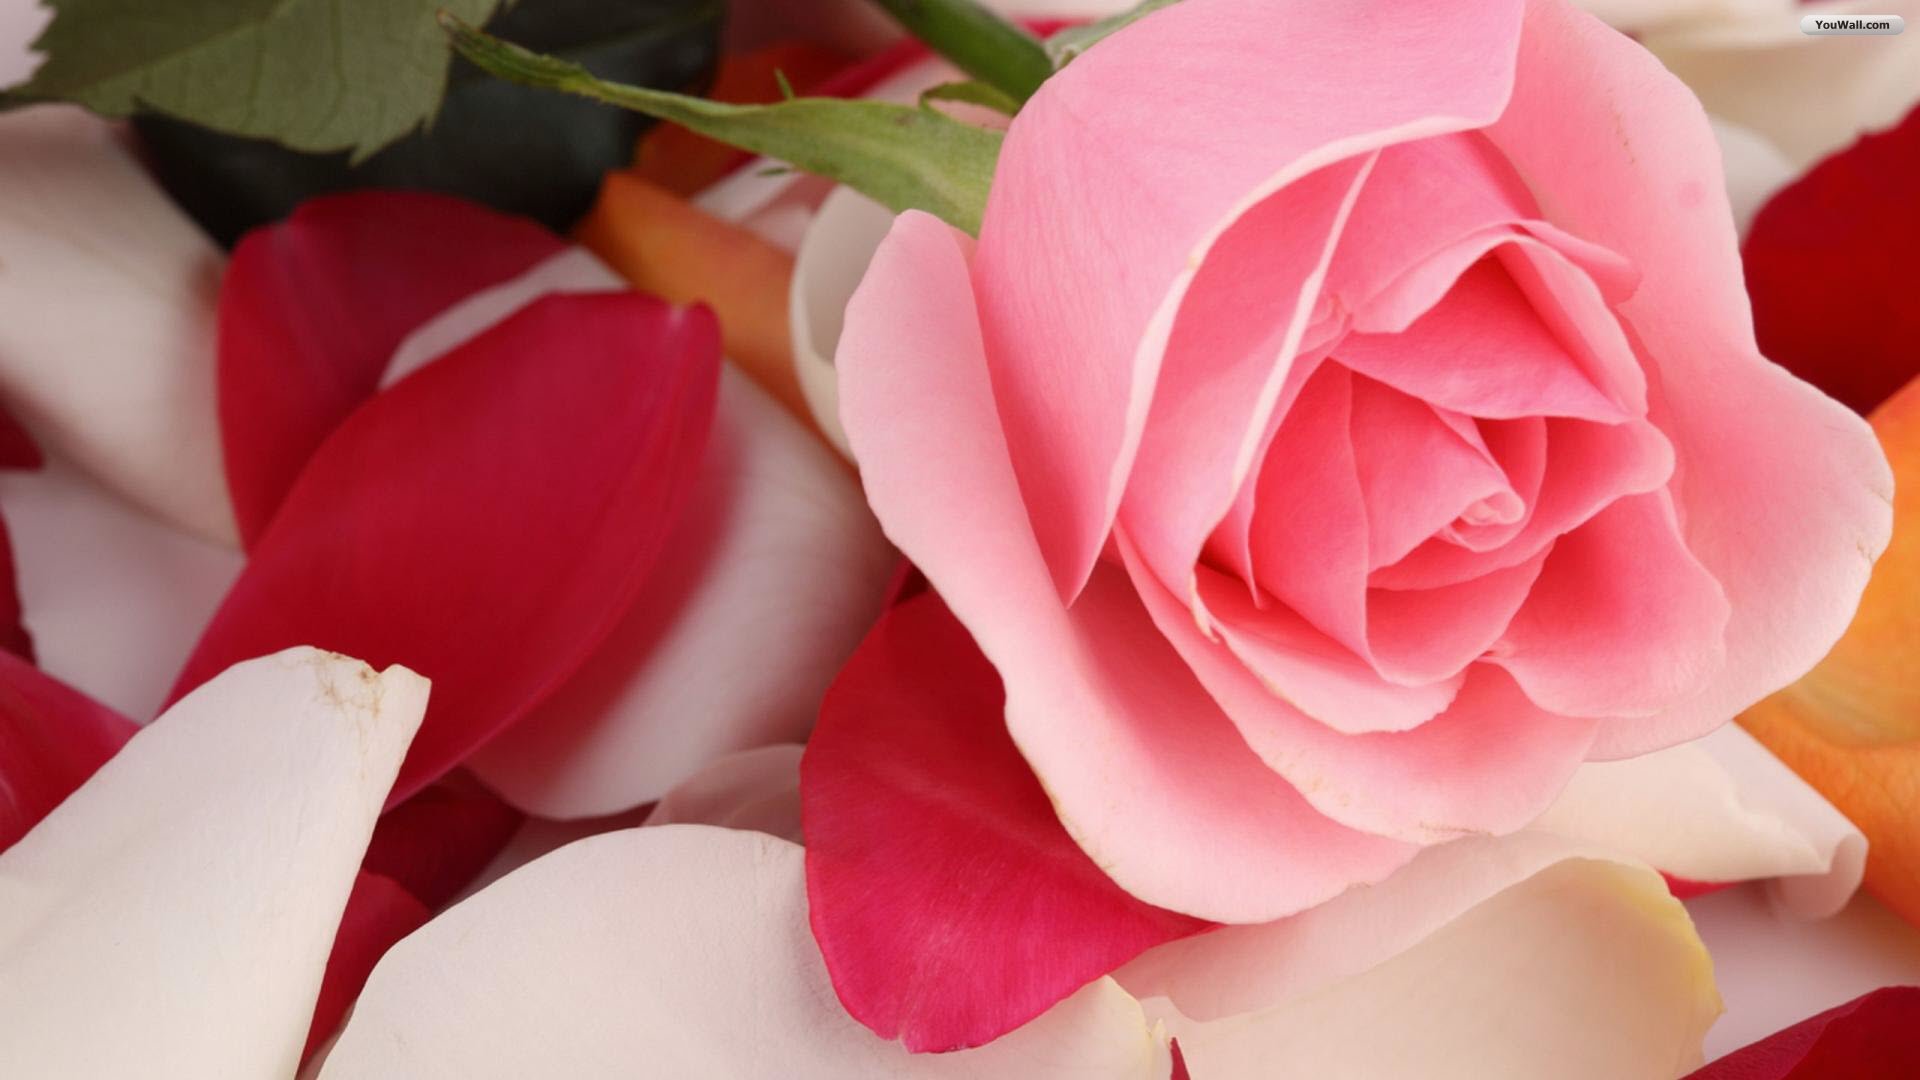 wallpaper berwarna,petal,pink,flower,garden roses,rose